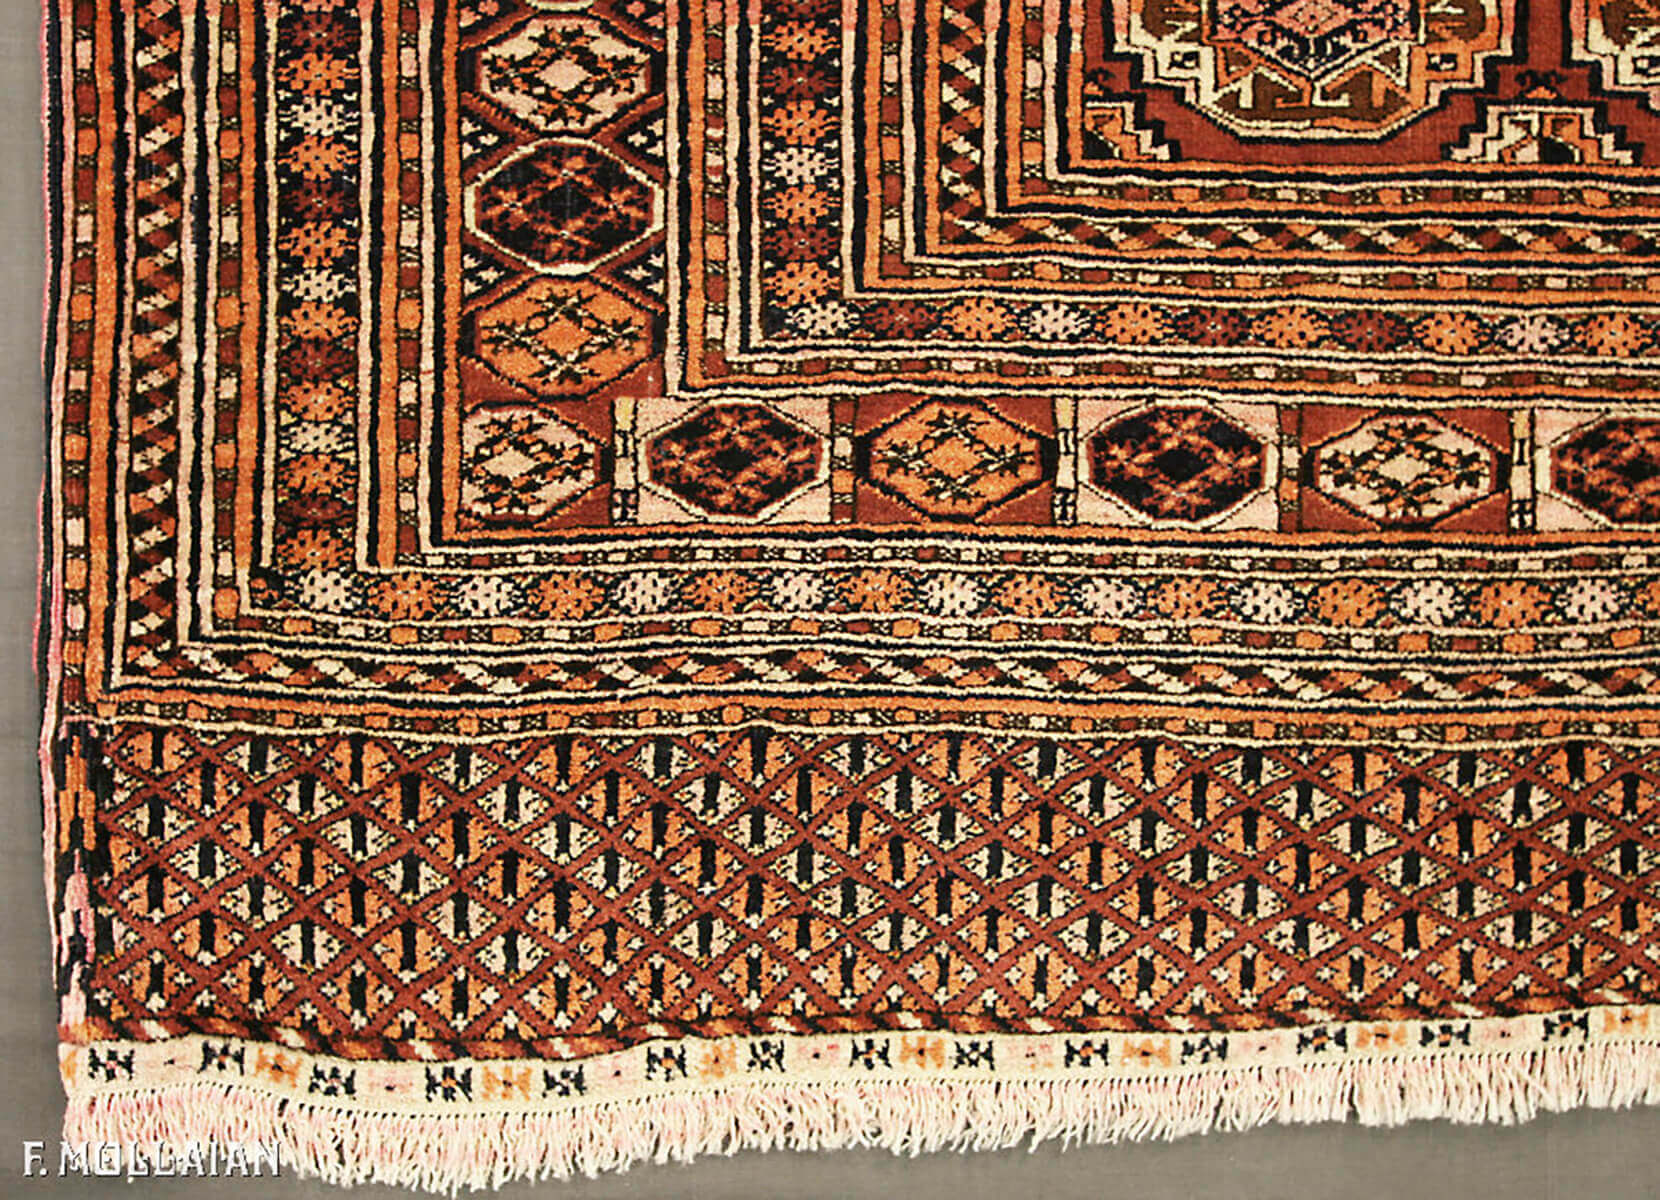 قالی نیمه آنتیک ترکمنی بخارا آنتیک کد:۶۰۱۳۳۸۱۸